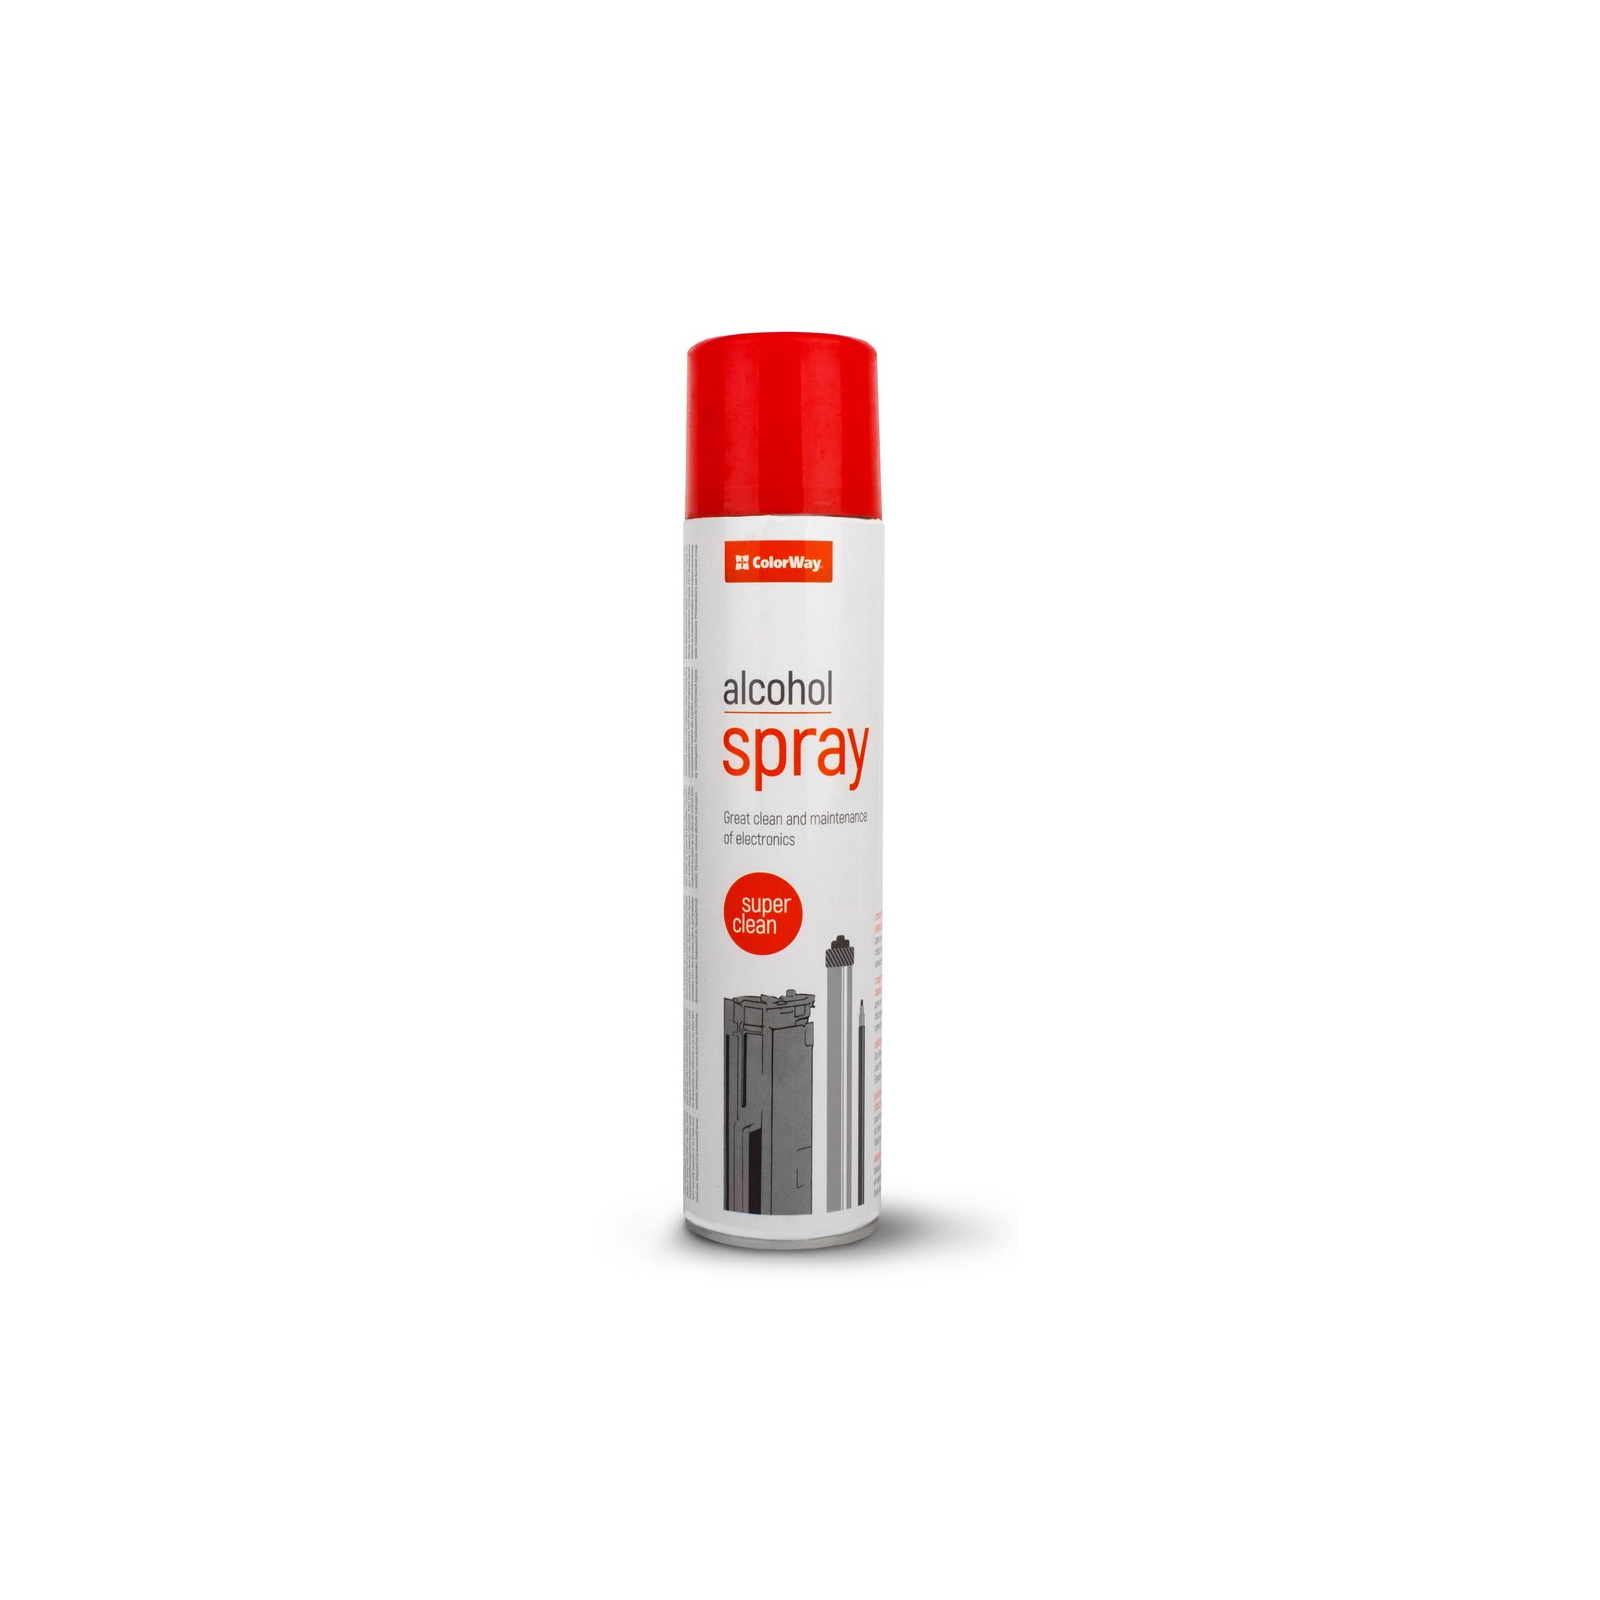 Спрей для очистки ColorWay alcohol spray, 300ml (CW-3730)